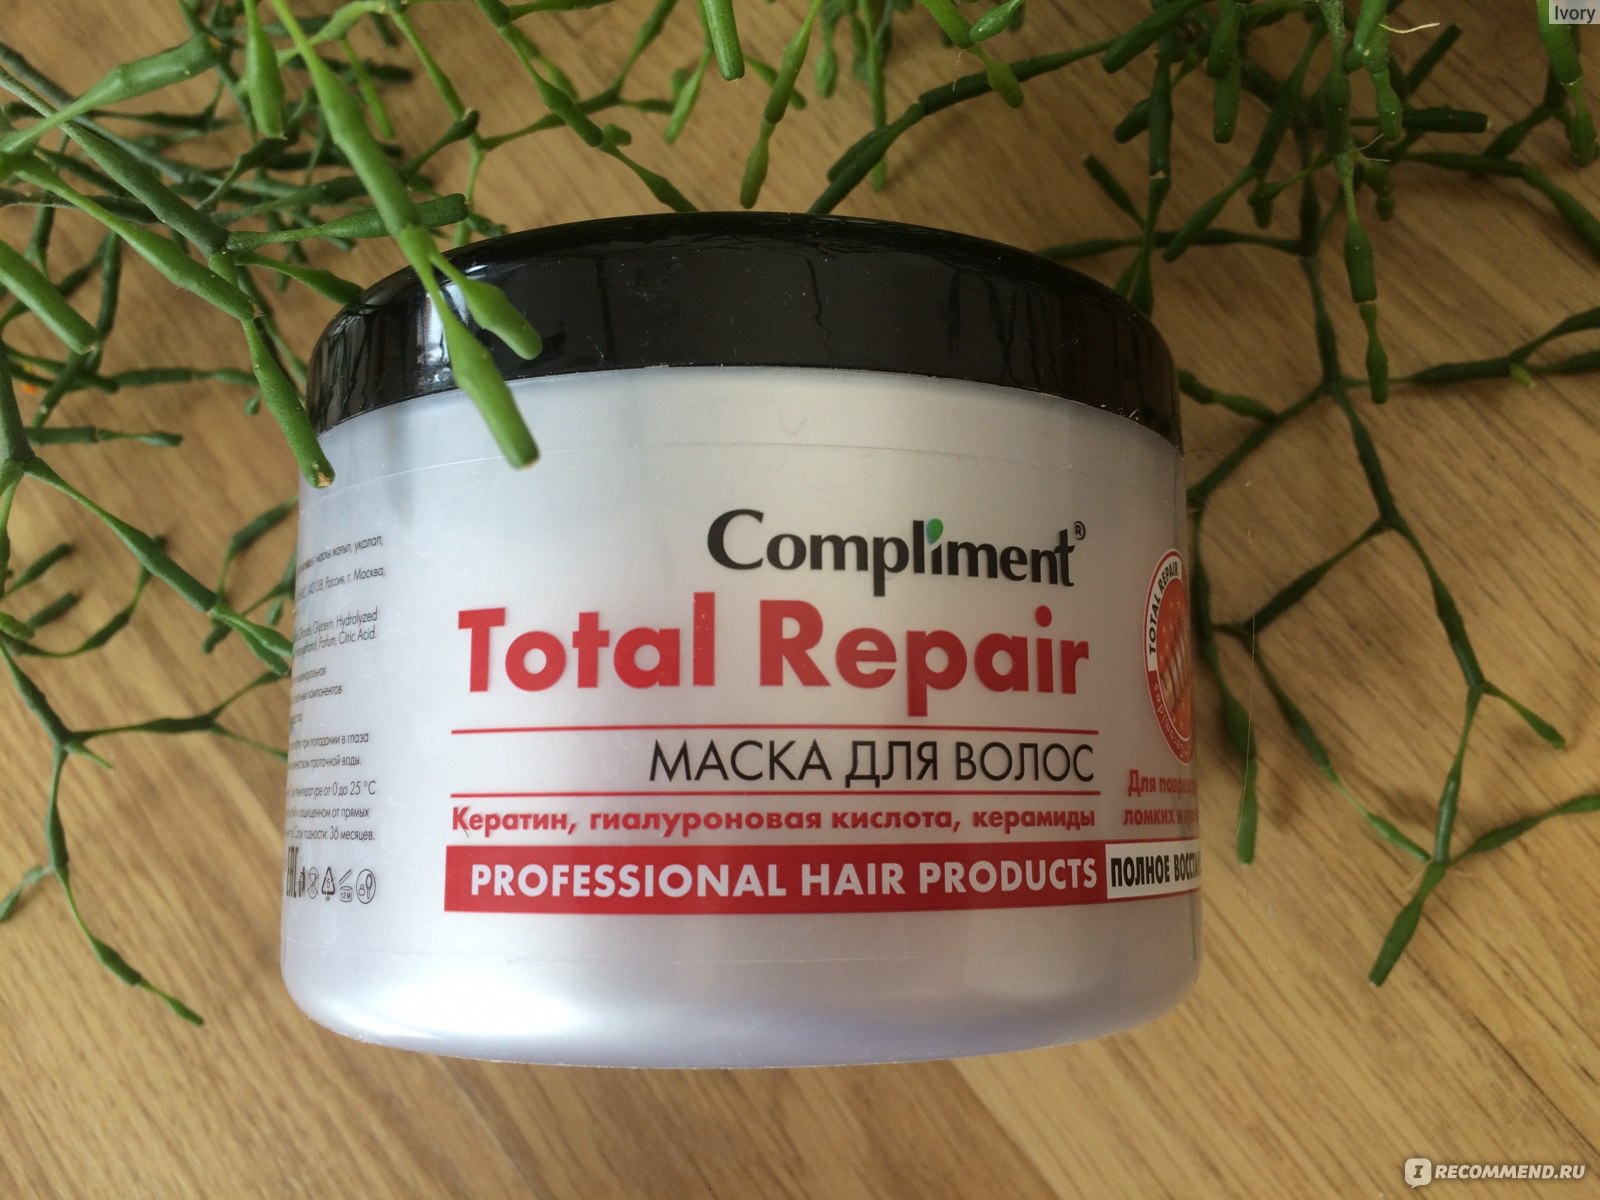 Compliment бальзам для волос extra-repair восстановление структуры волос